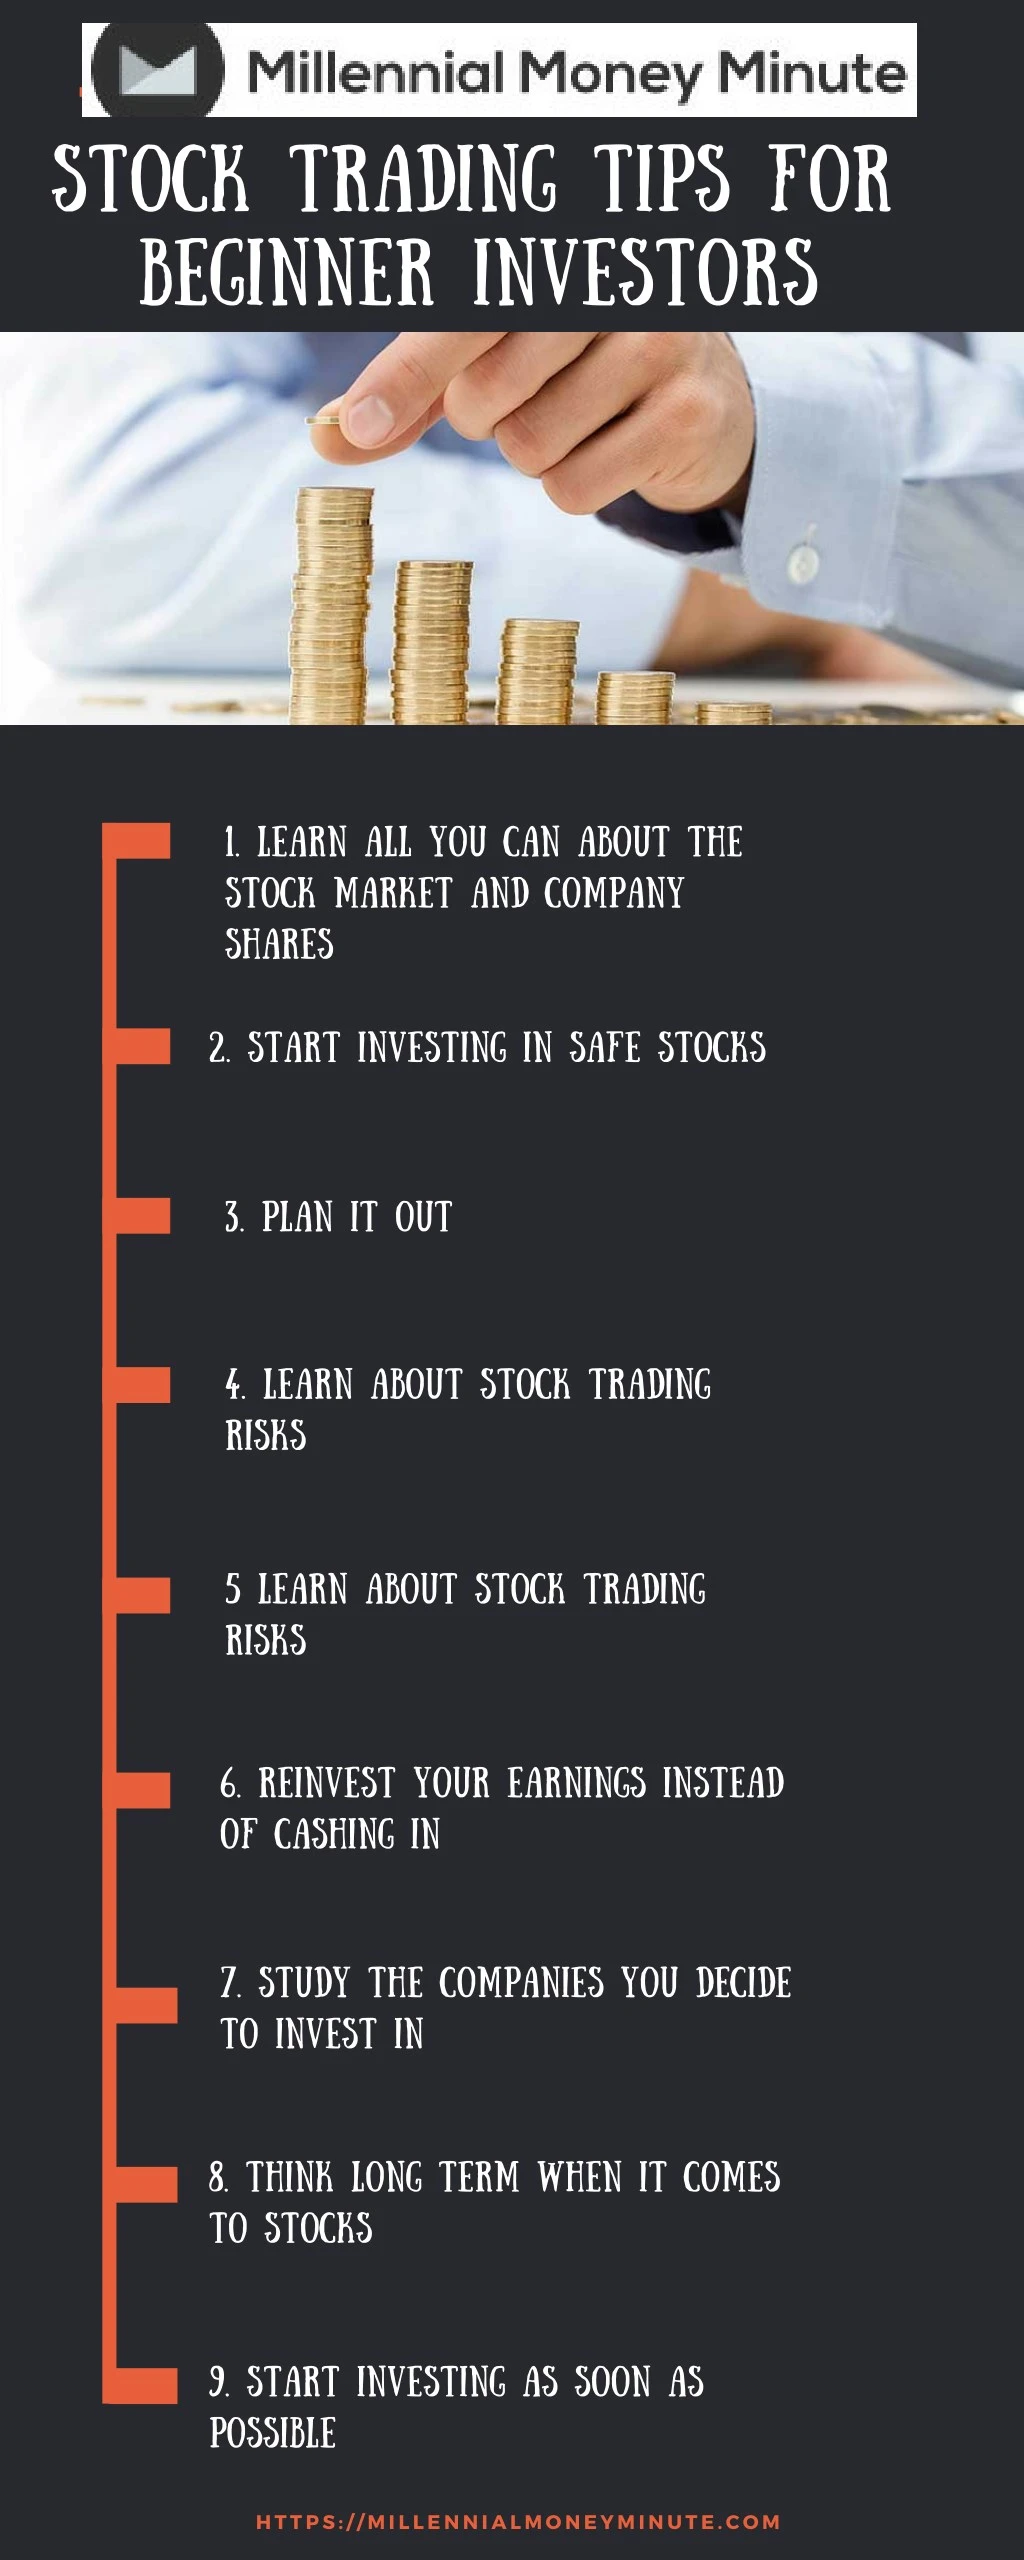 stock trading tips for beginner investors